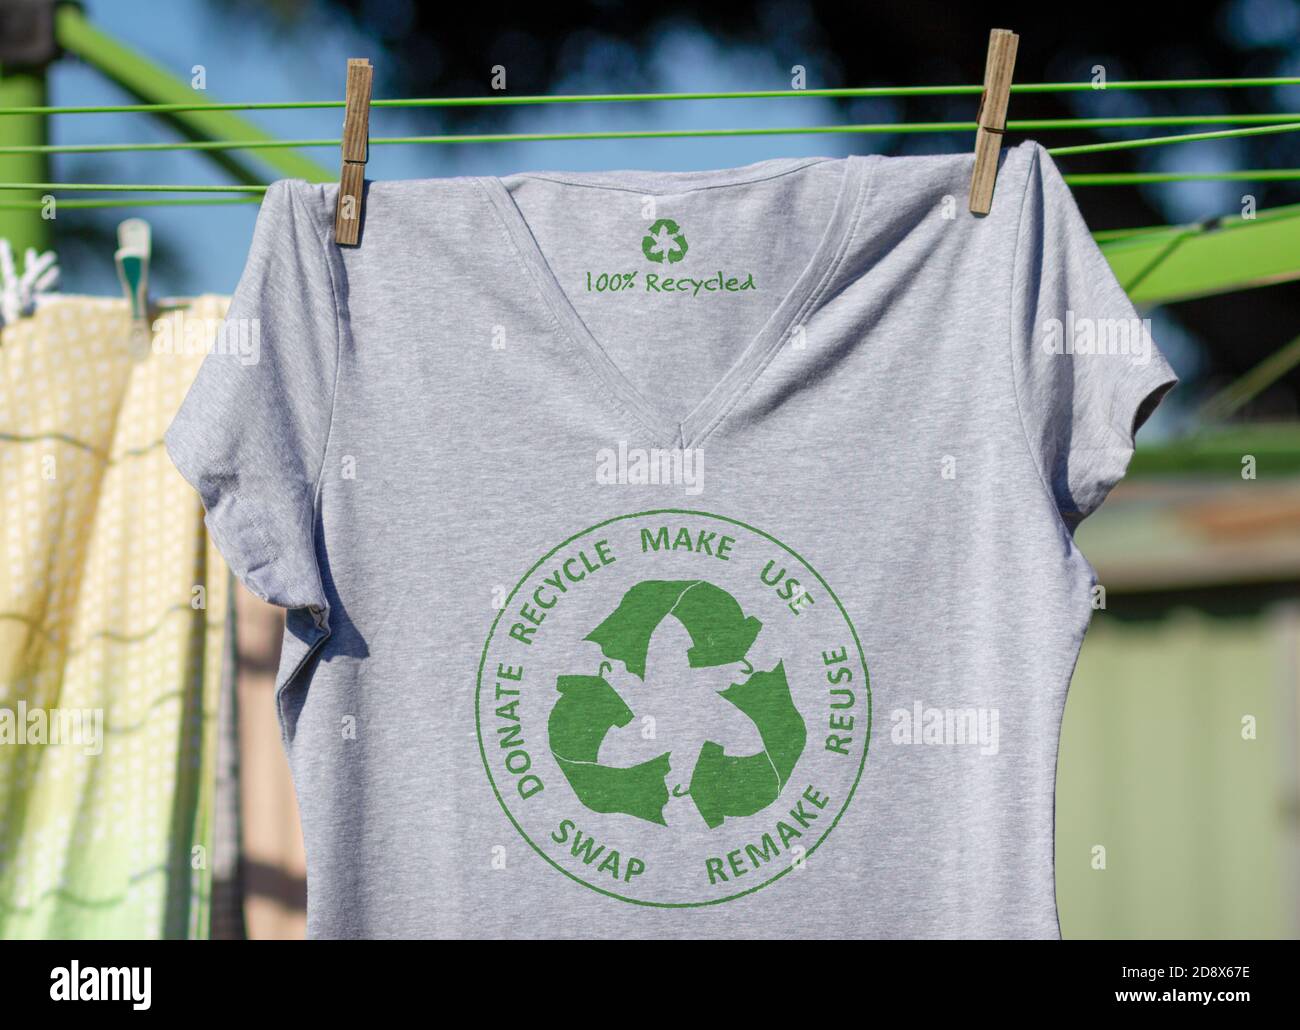 Camiseta en la línea de lavado con la economía circular textiles icono, hacer, utilizar, reutilizar, intercambiar, donar, reciclar con eco ropa reciclar icono de moda sostenible Foto de stock